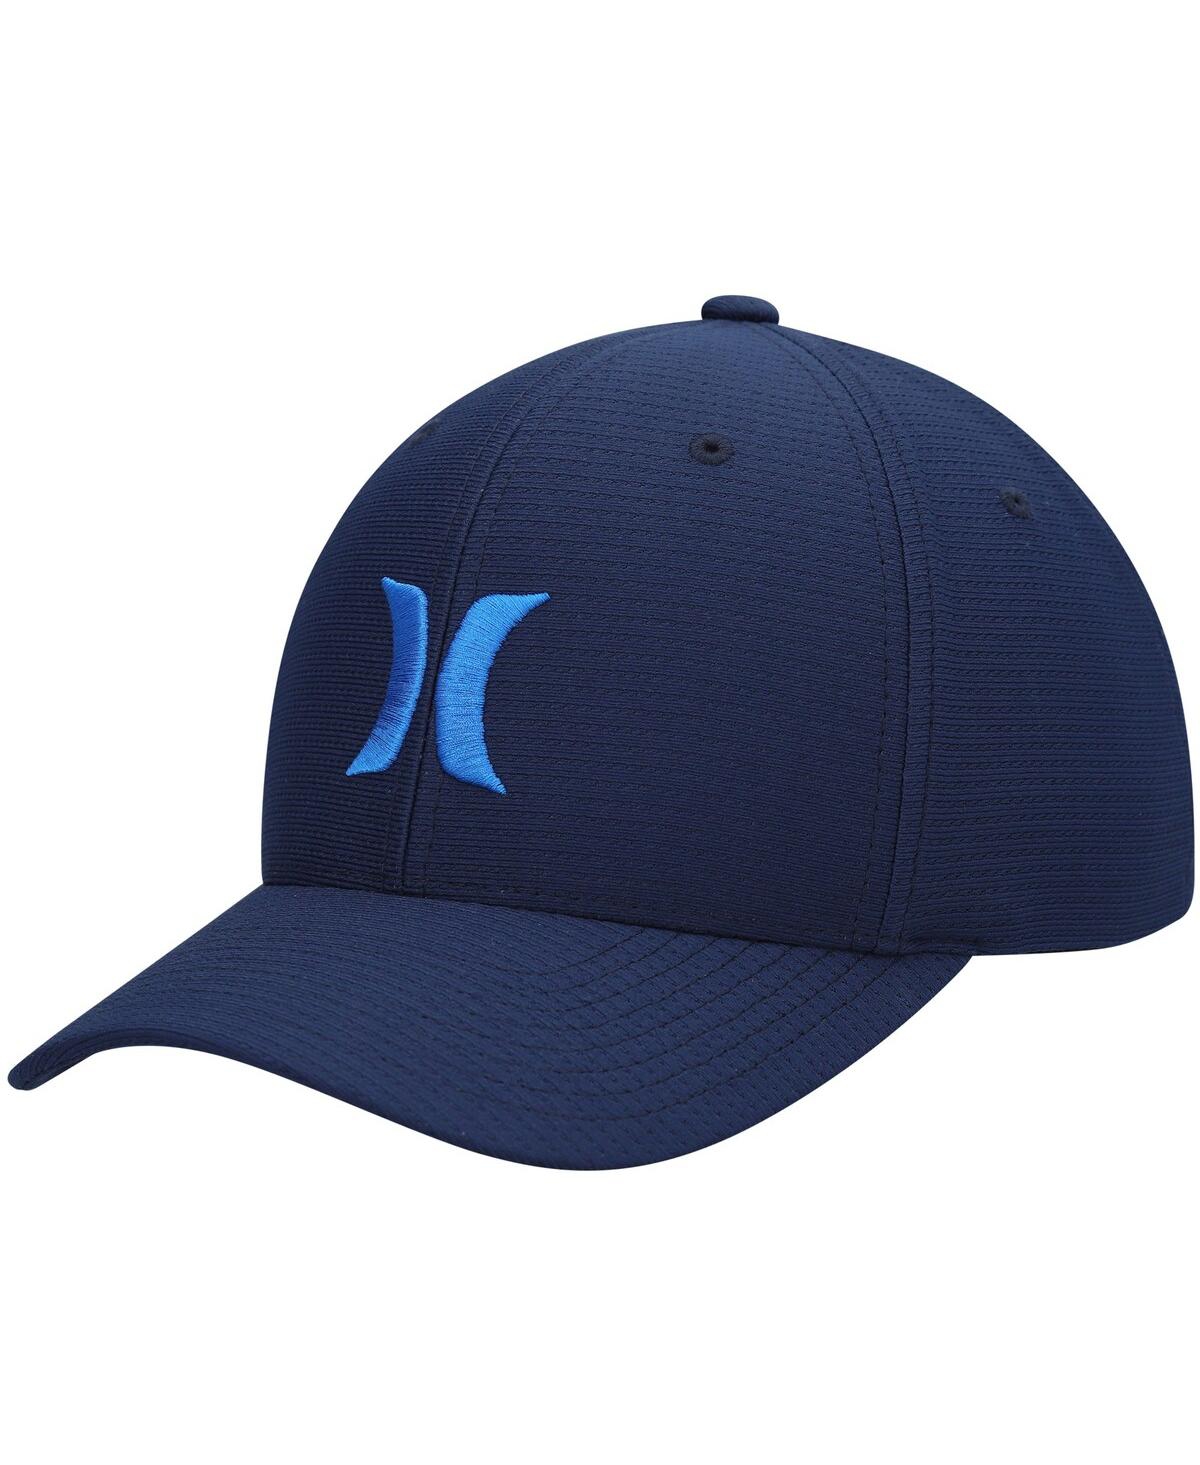 Hurley Men's  Blue H2o-dri Pismo Flex Fit Hat